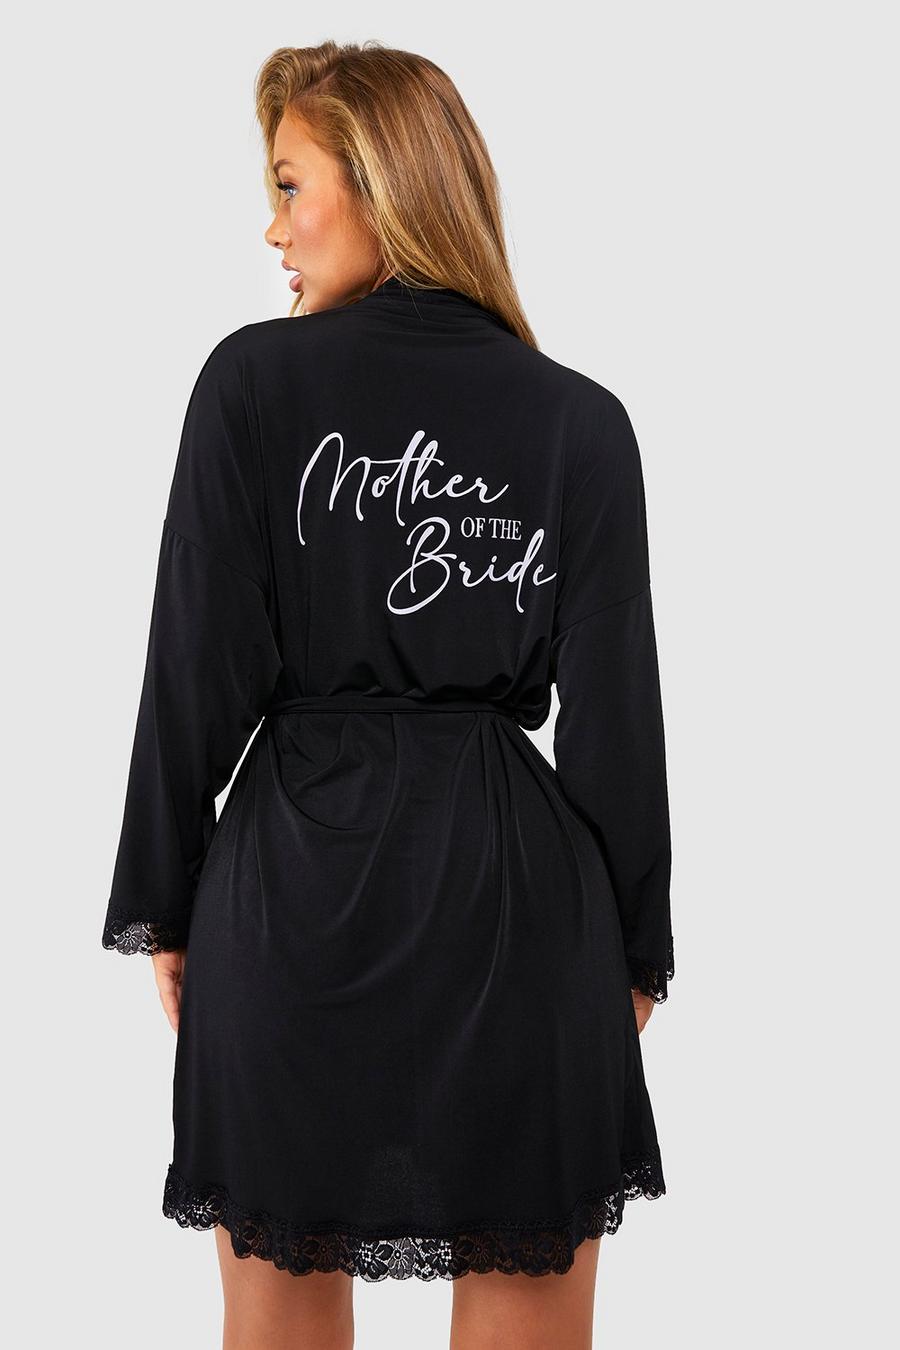 Vestaglia in jersey con scritta Mother Of The Bride e finiture in pizzo, Black